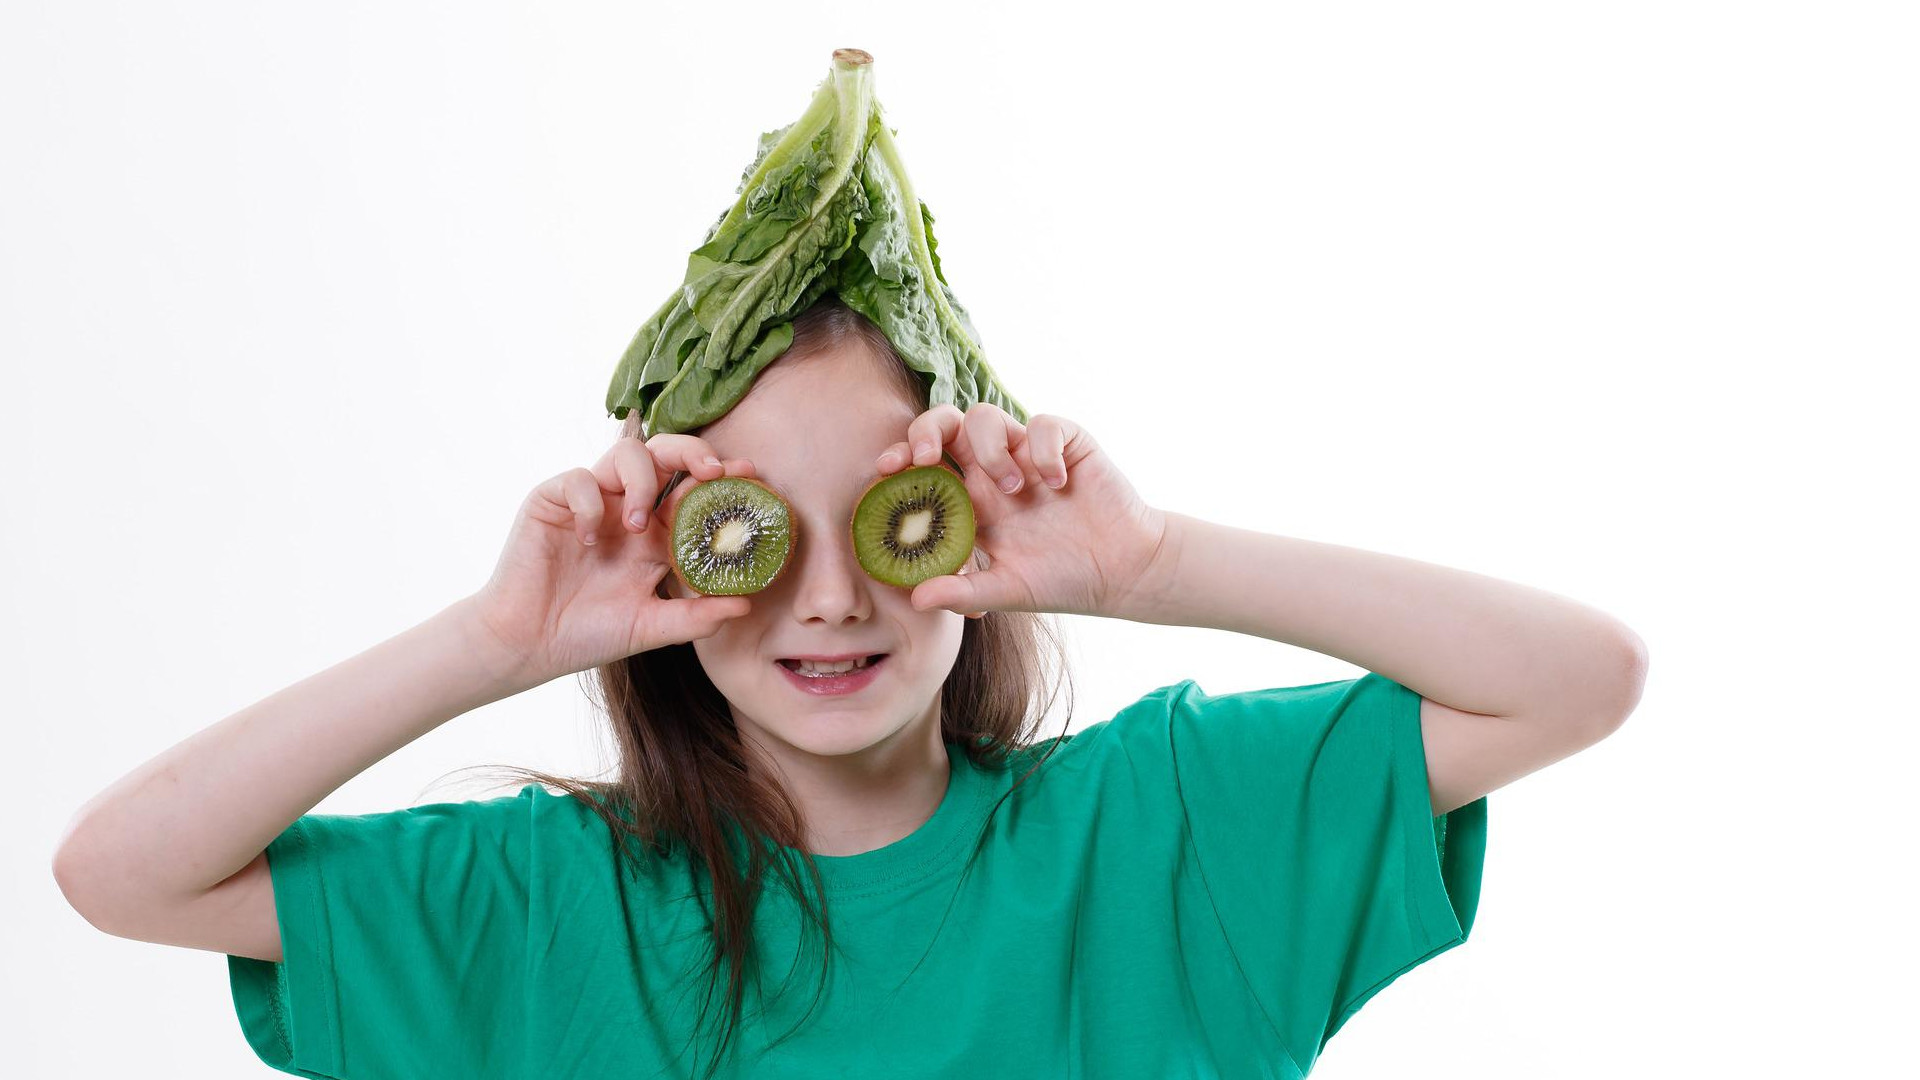 Kind vegan kiwi vor den augen salat auf kopf